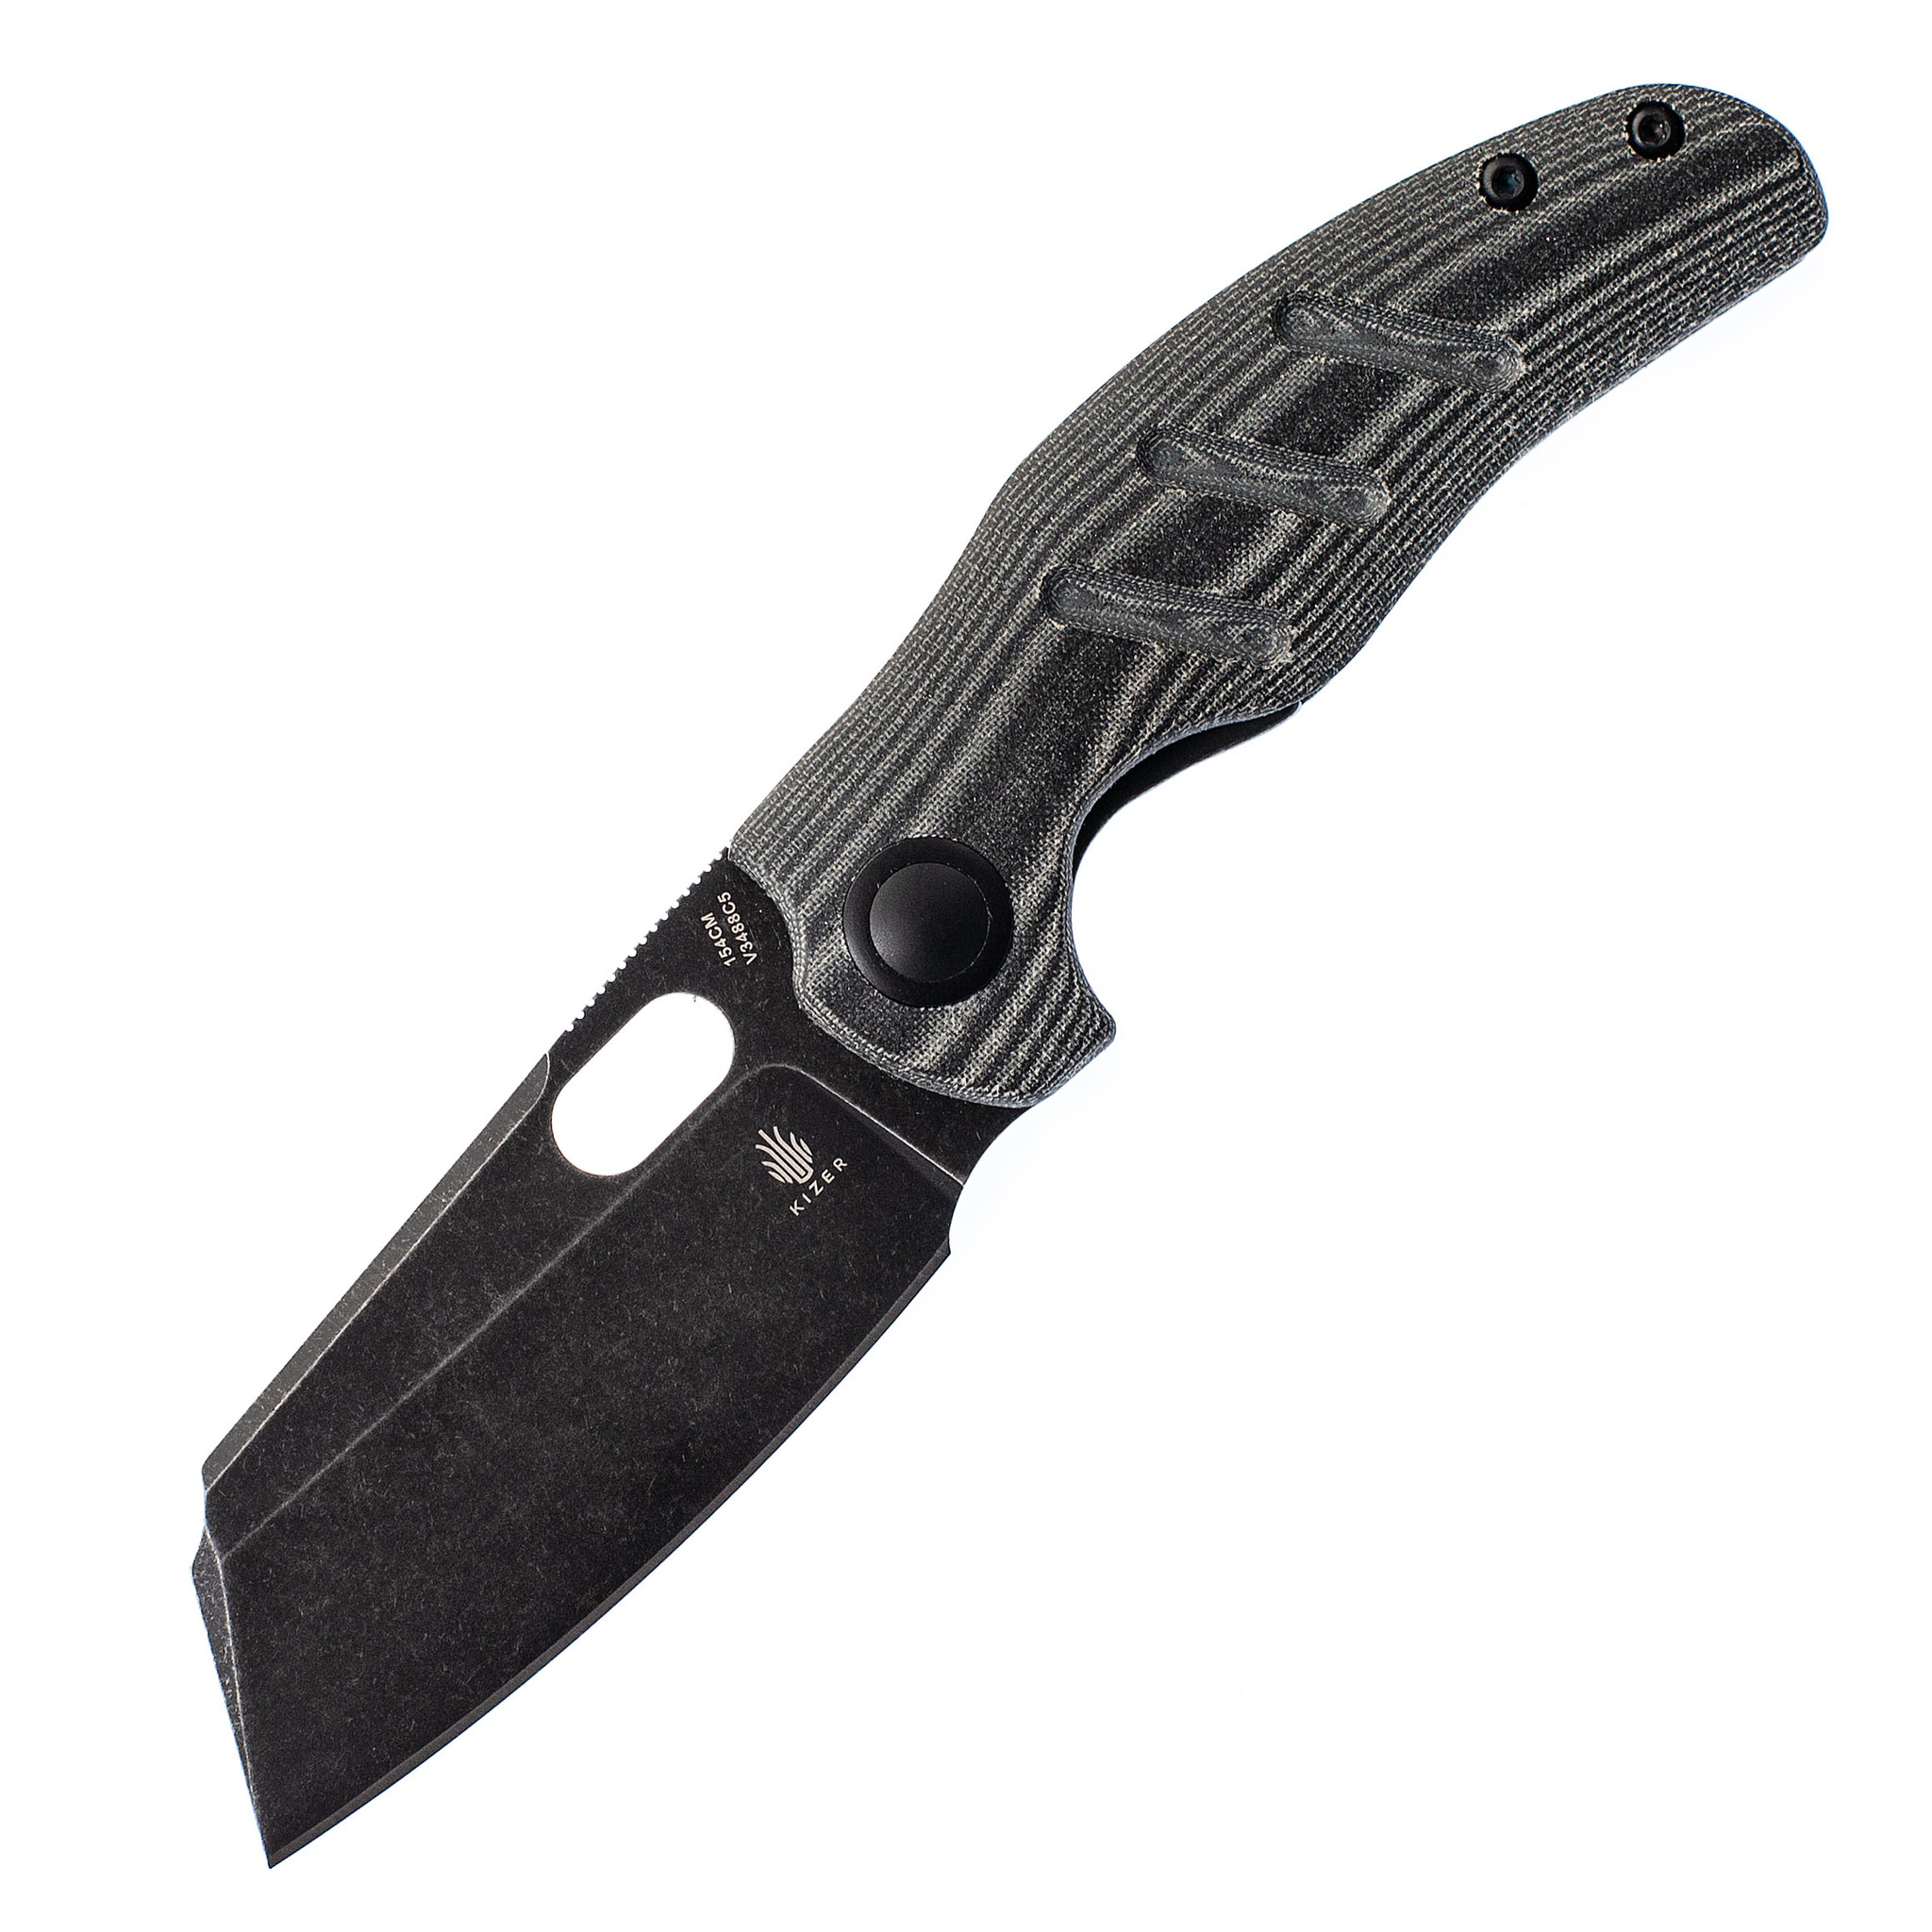 Складной нож Kizer C01C mini Black, сталь 154CM, рукоять микарта нож автомат godson рук ть blues микарта сатин клинок 154cm pt710 pro tech